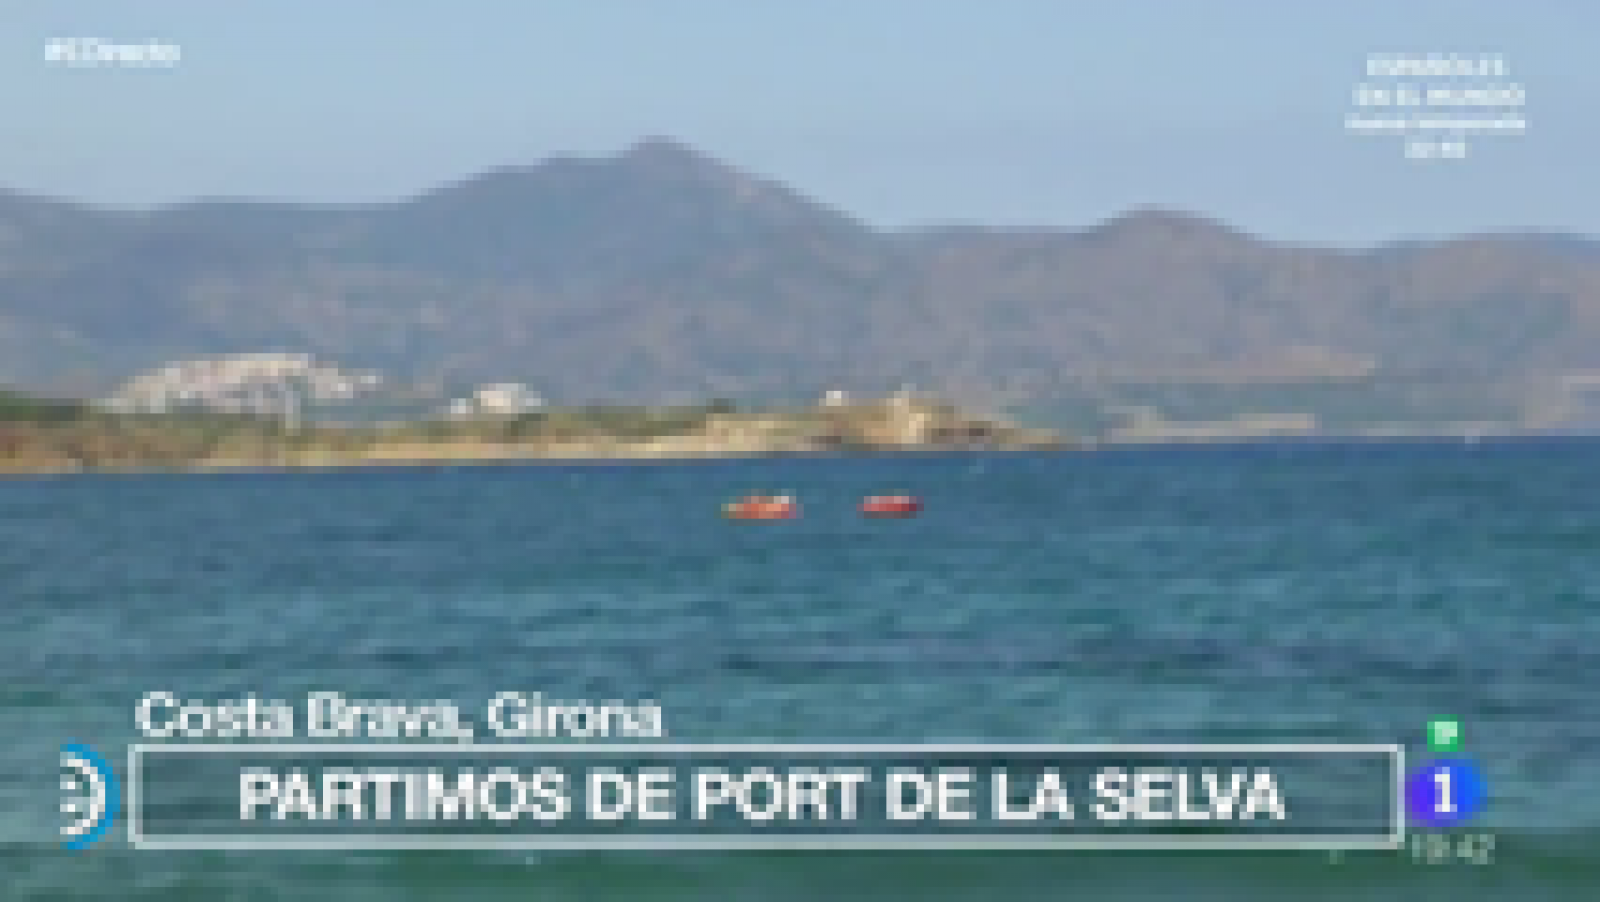 España Directo - Viajamos a Costa Brava partiendo de Port de la Selva